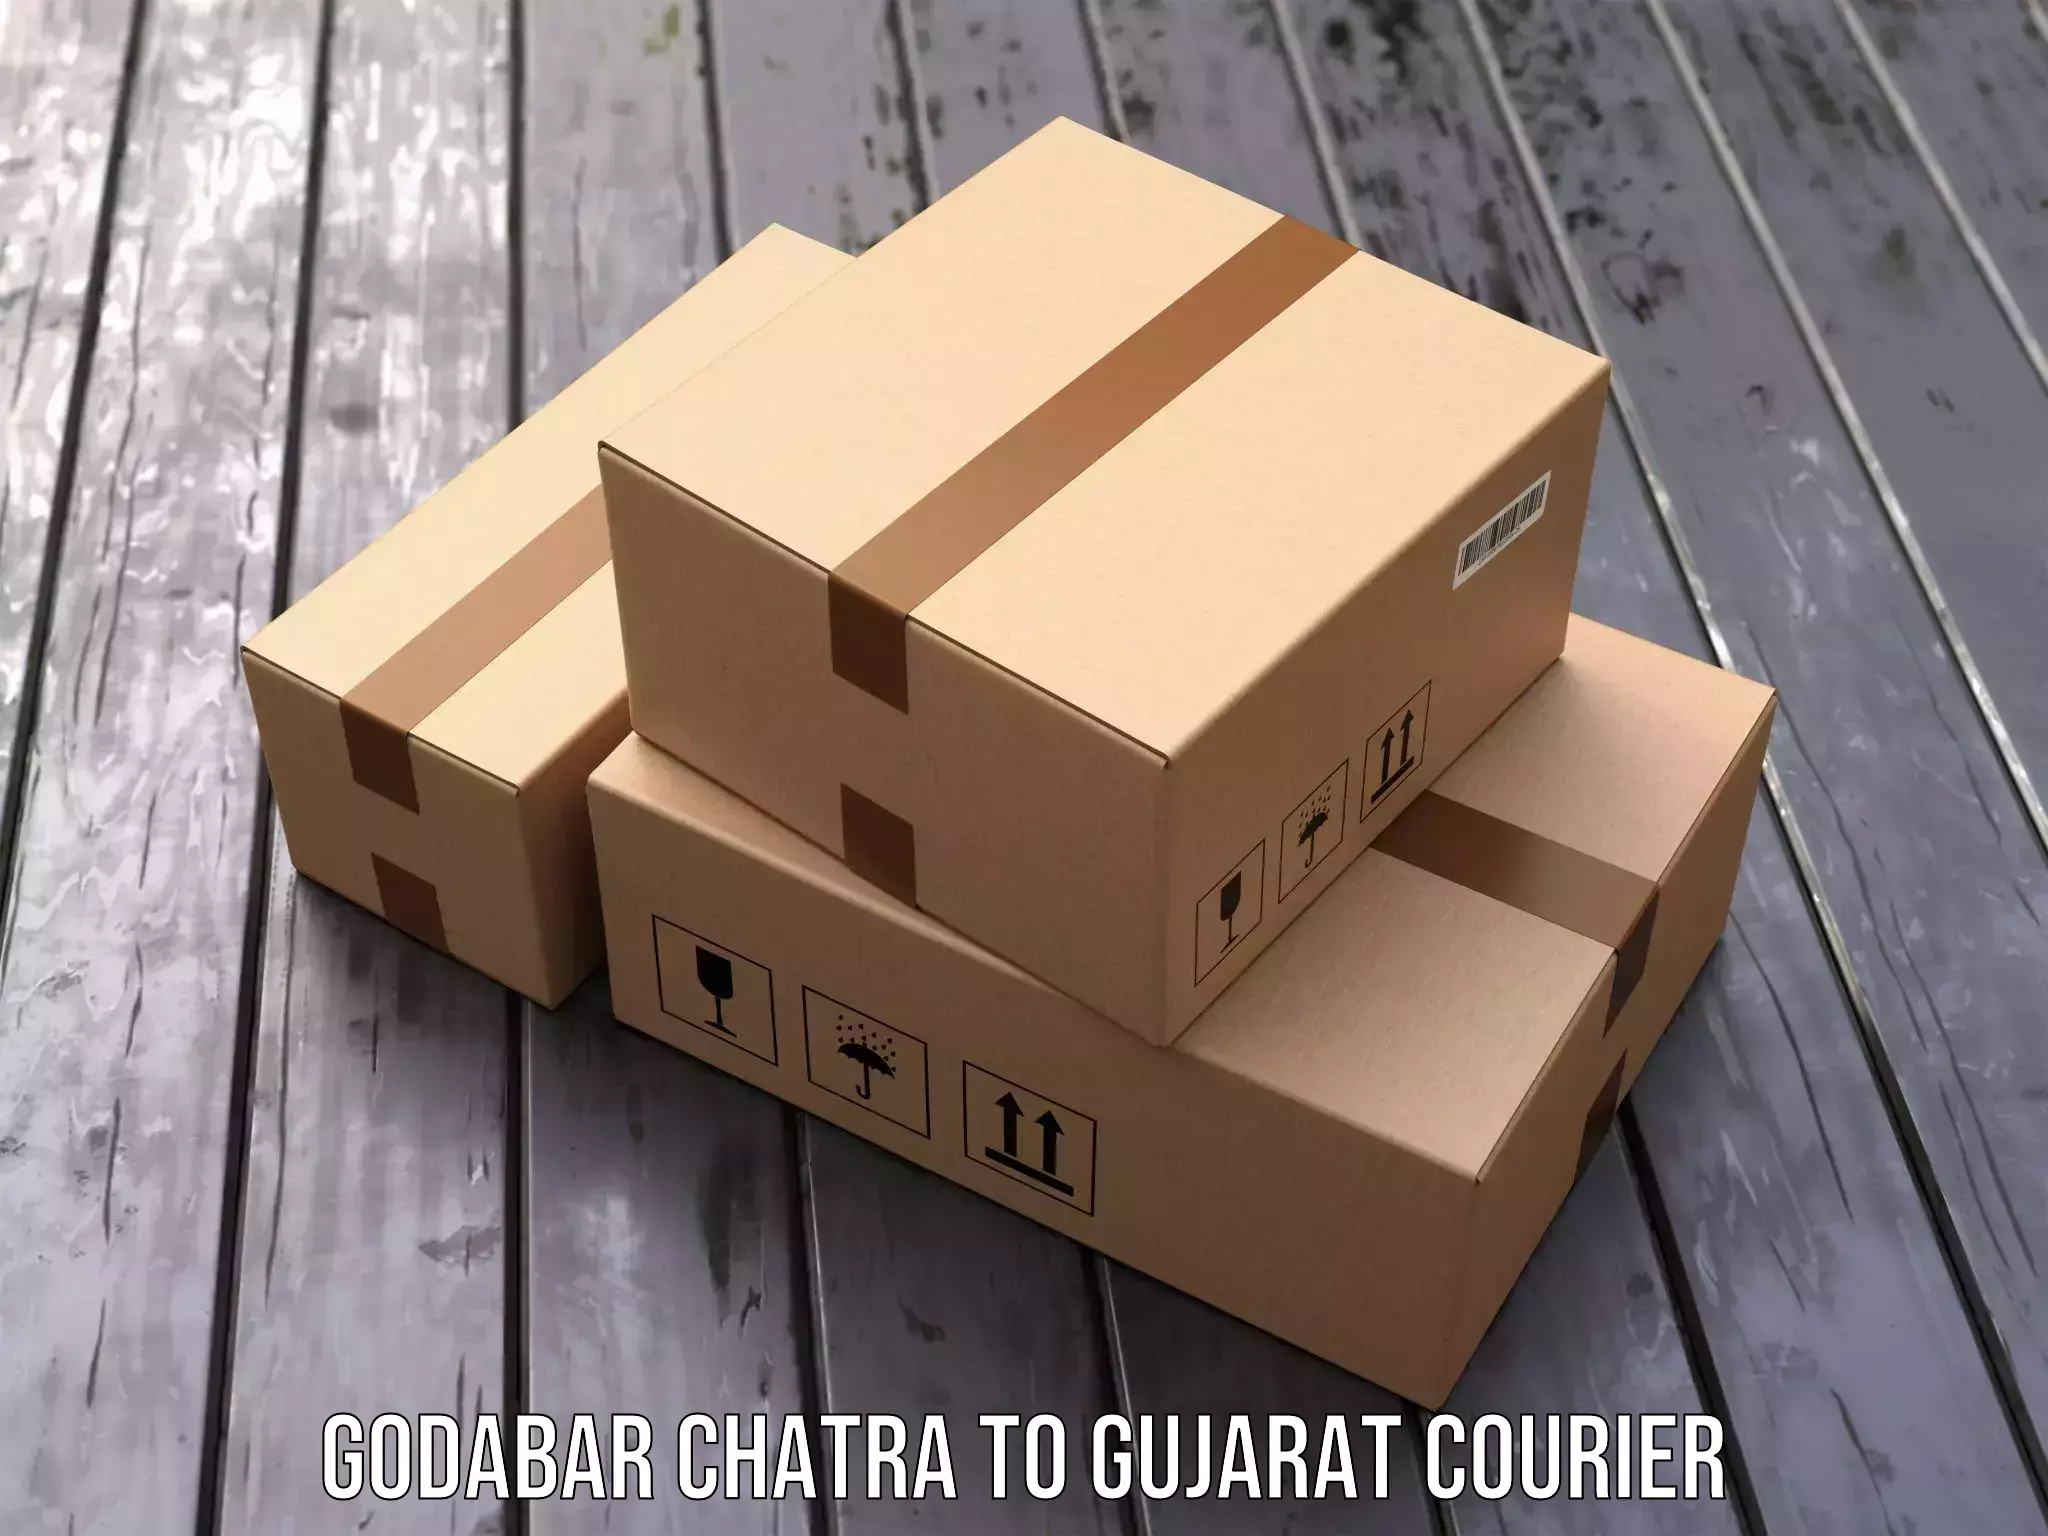 Multi-national courier services Godabar Chatra to Mahuva